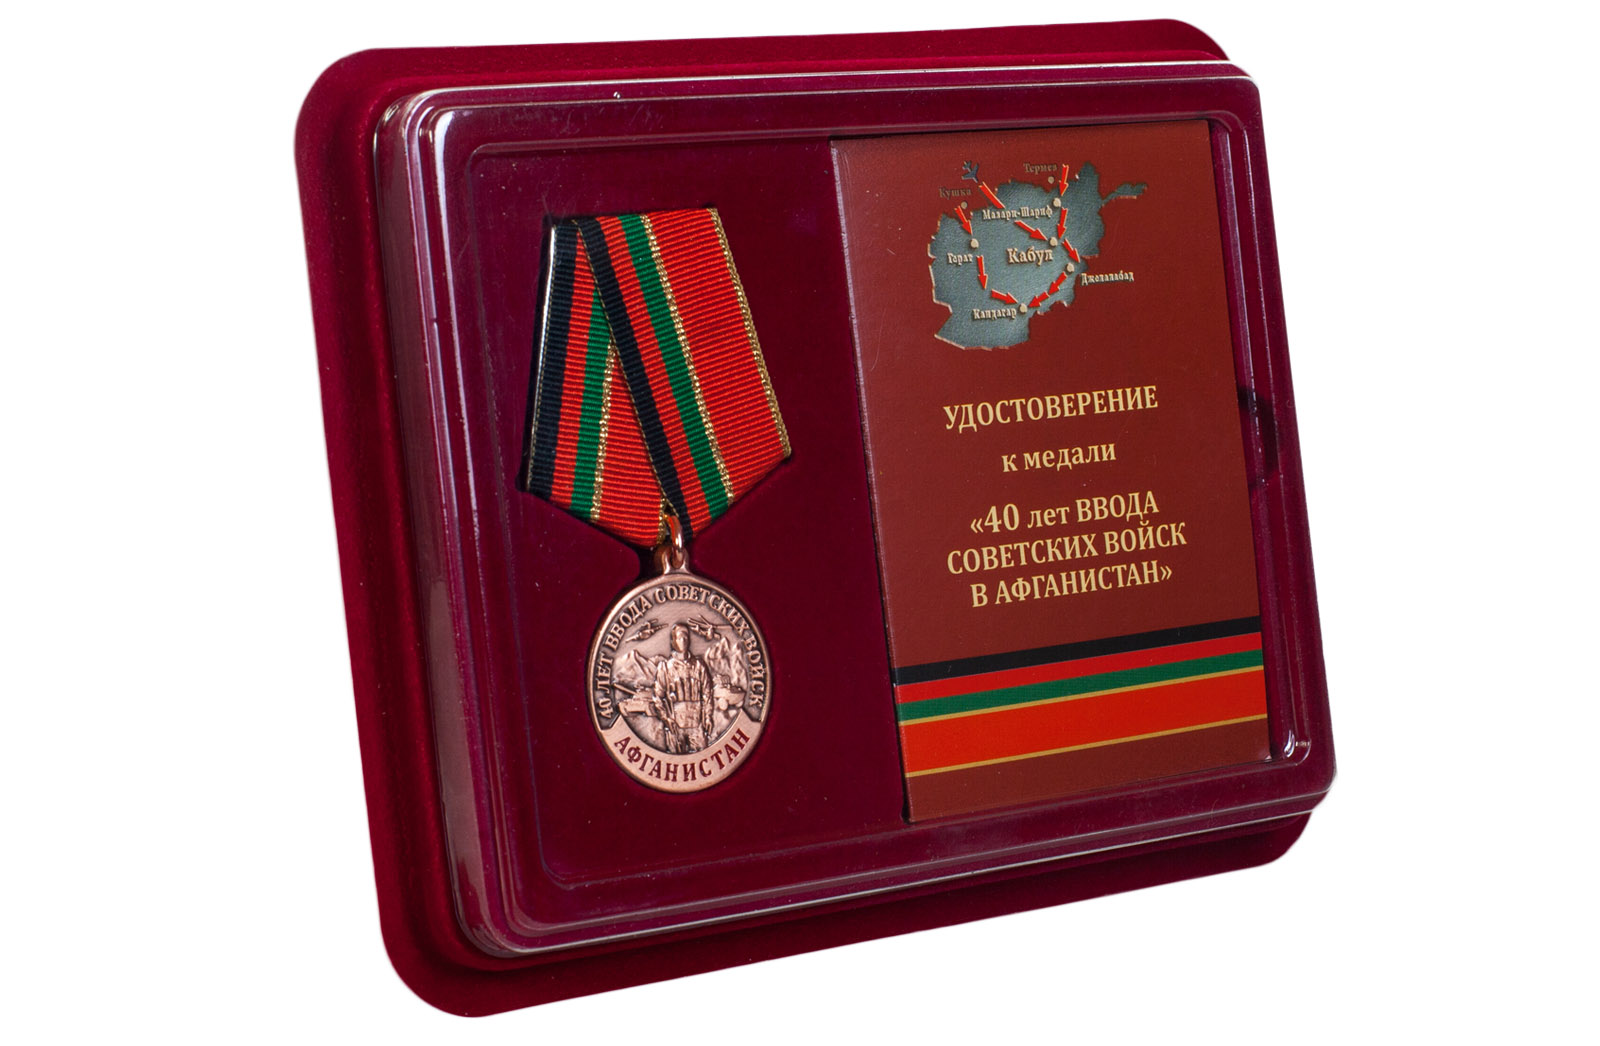 Купить памятную медаль 40 лет ввода Советских войск в Афганистан онлайн